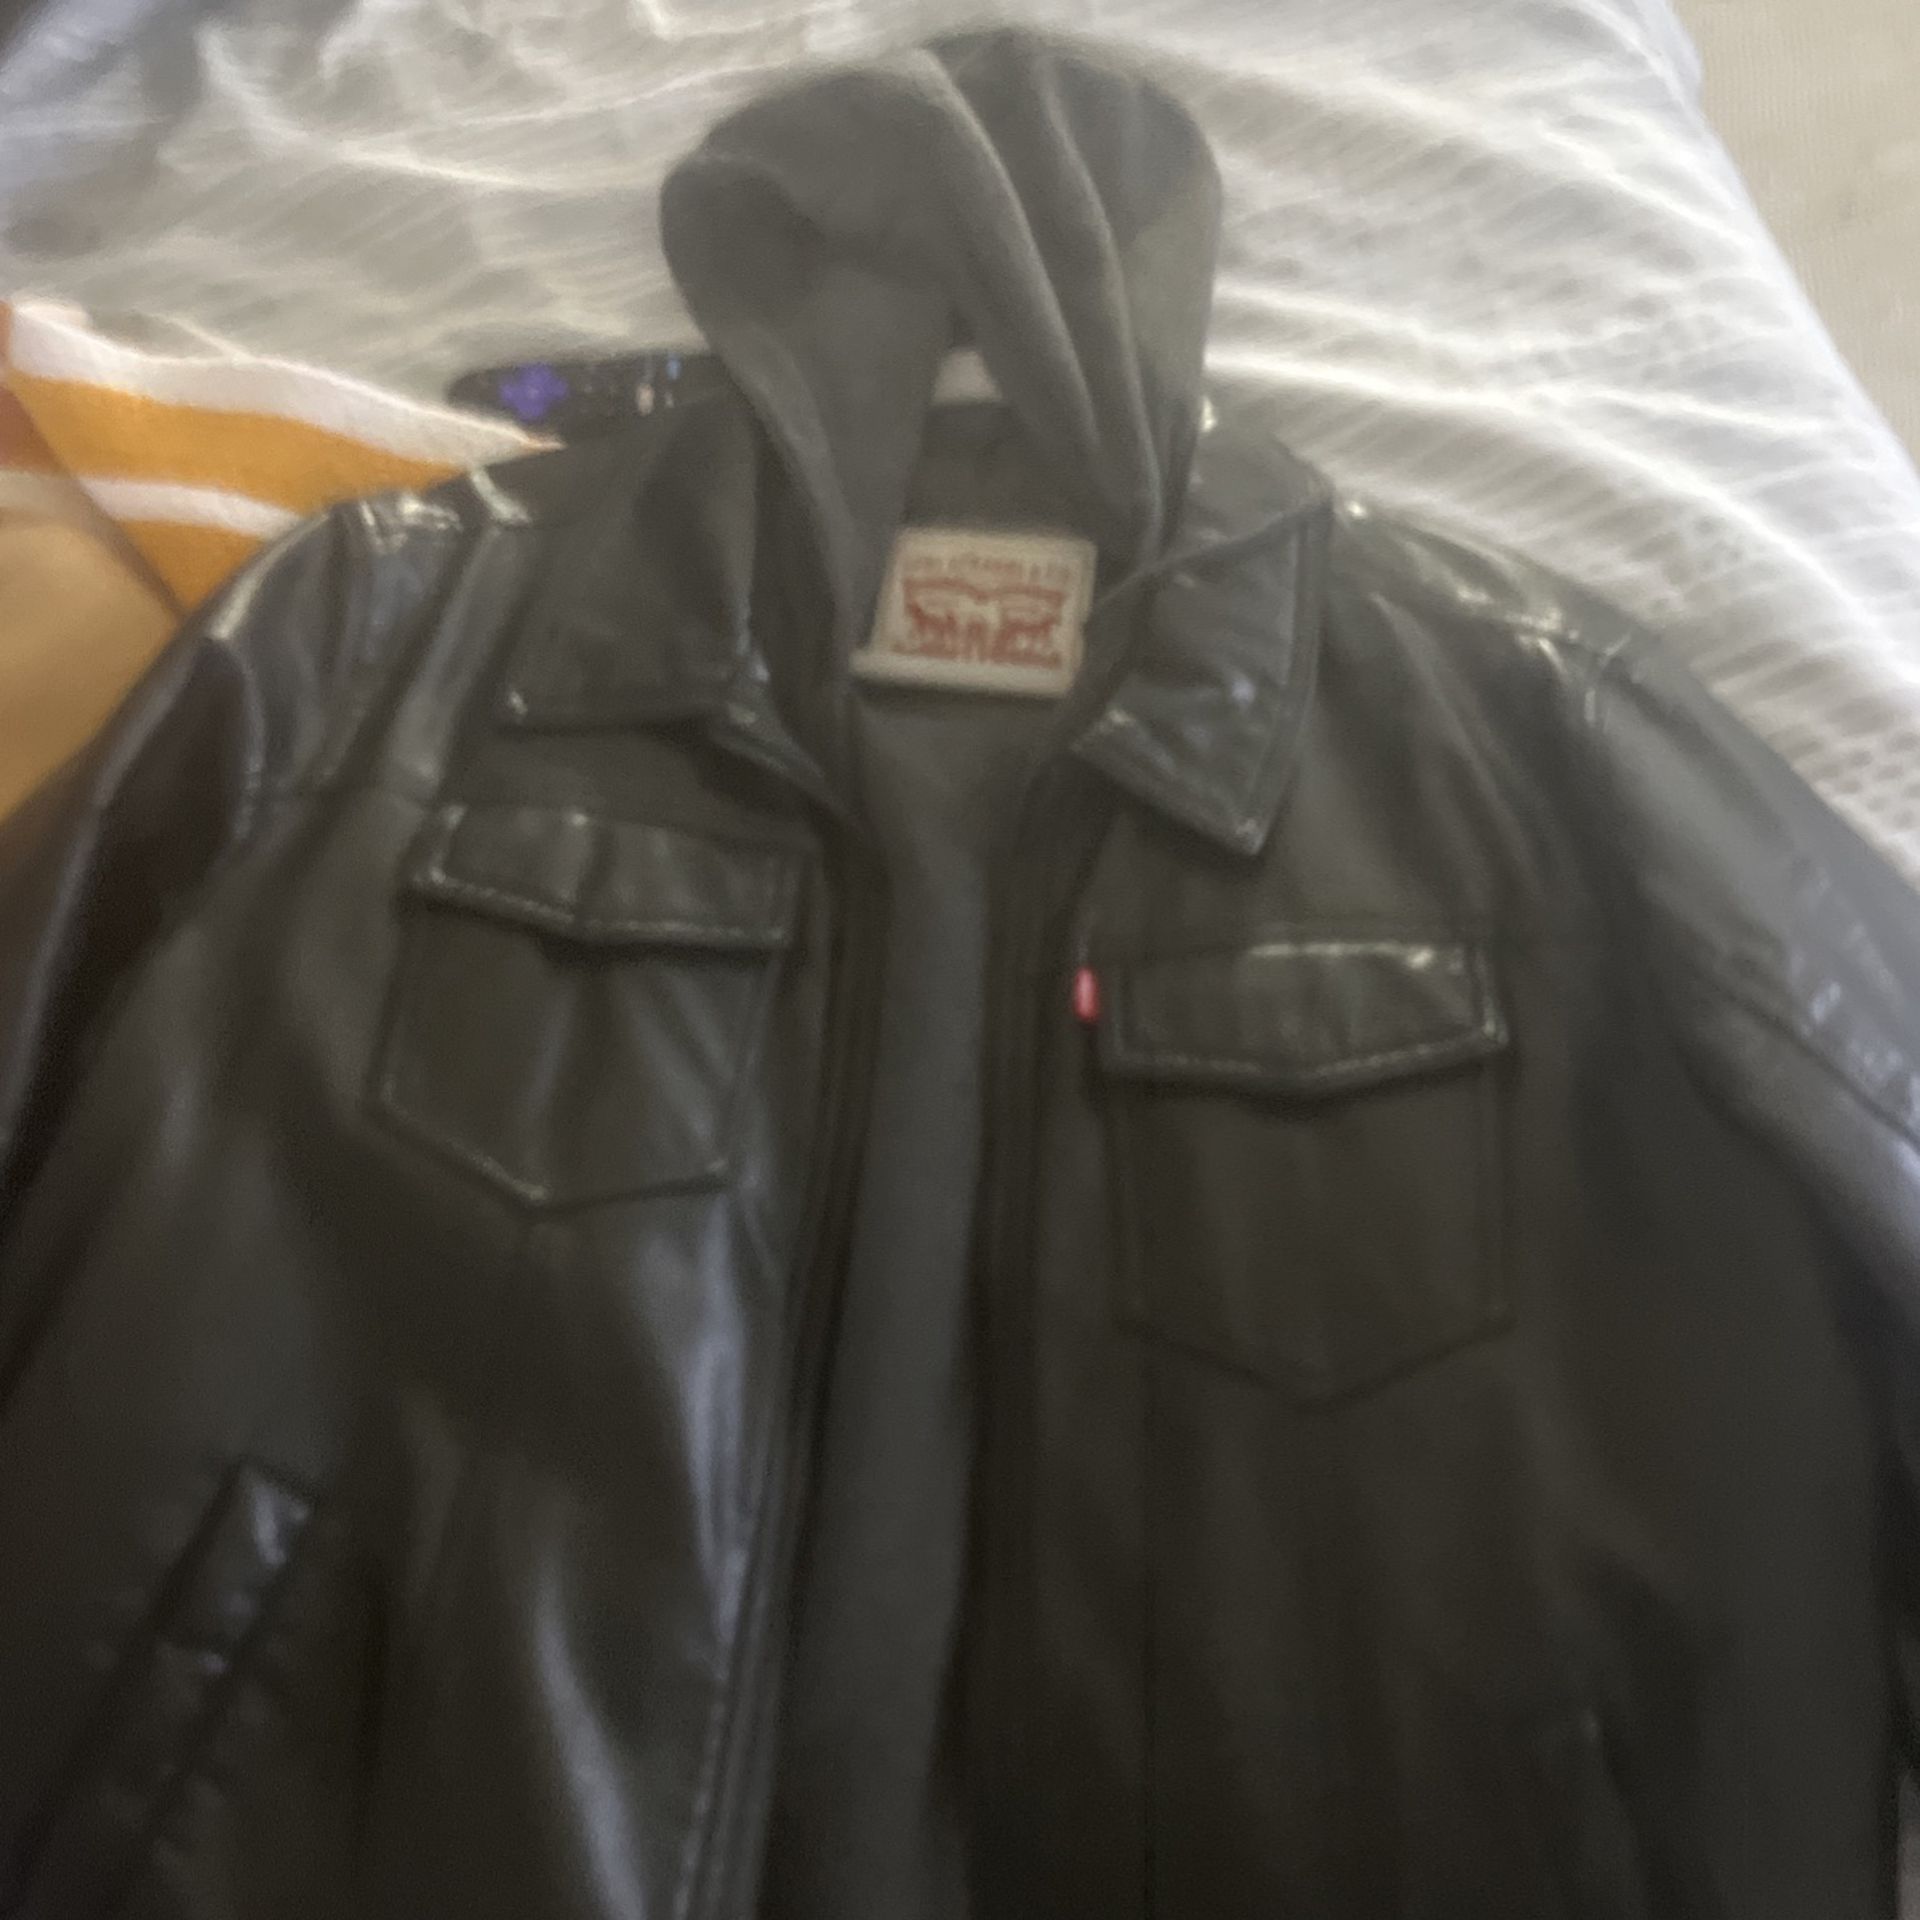 Levi Leather Jacket 